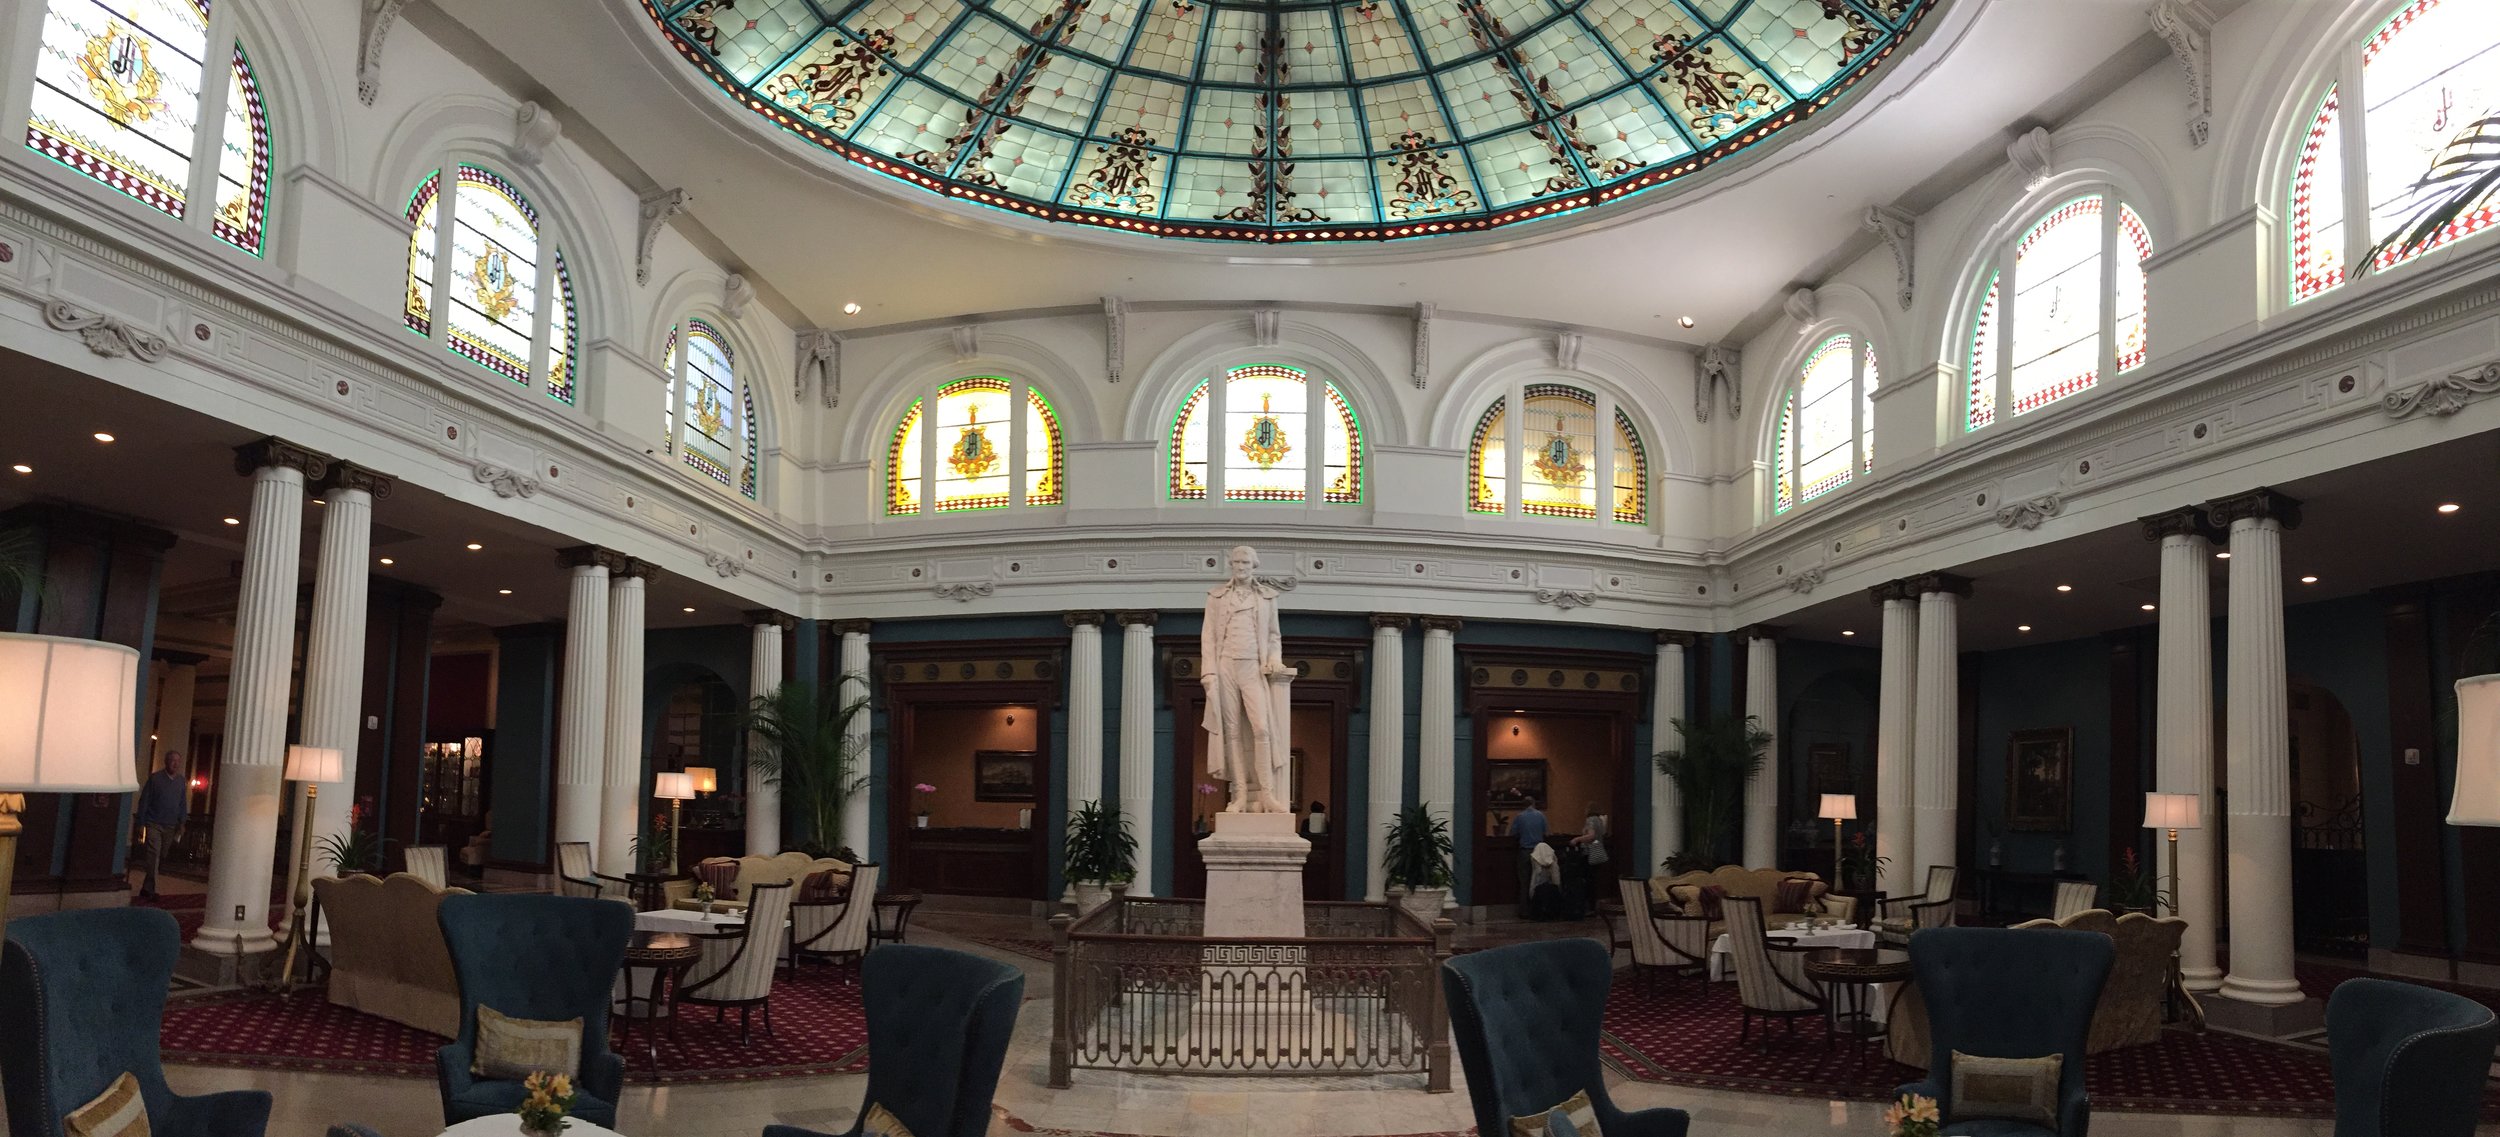  Inside the Jefferson Hotel&nbsp; 